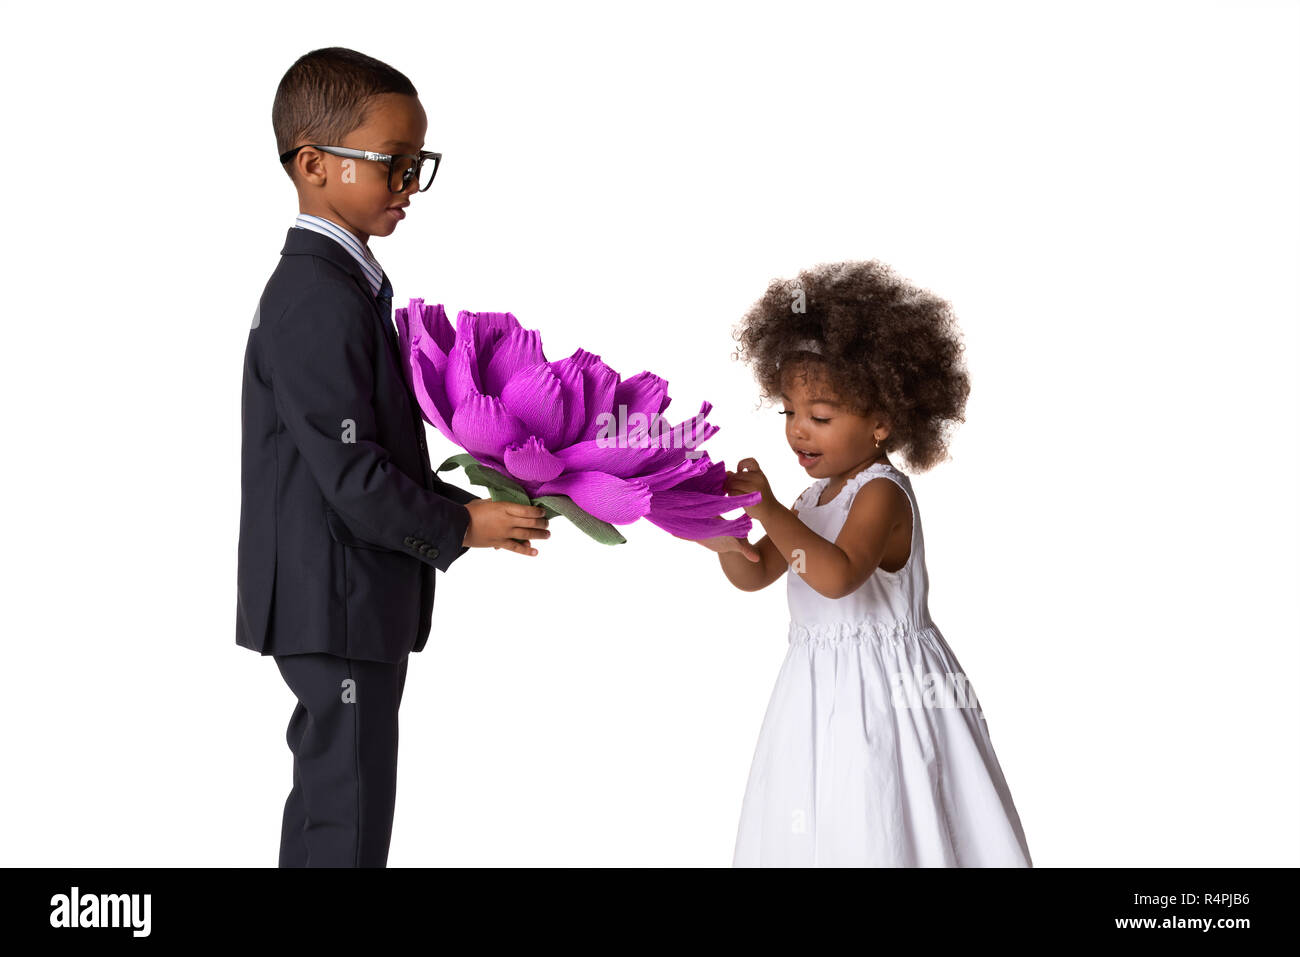 Beau garçon donne une jolie fille grande fleur origami.Les enfants adorent.isolé sur fond blanc Banque D'Images